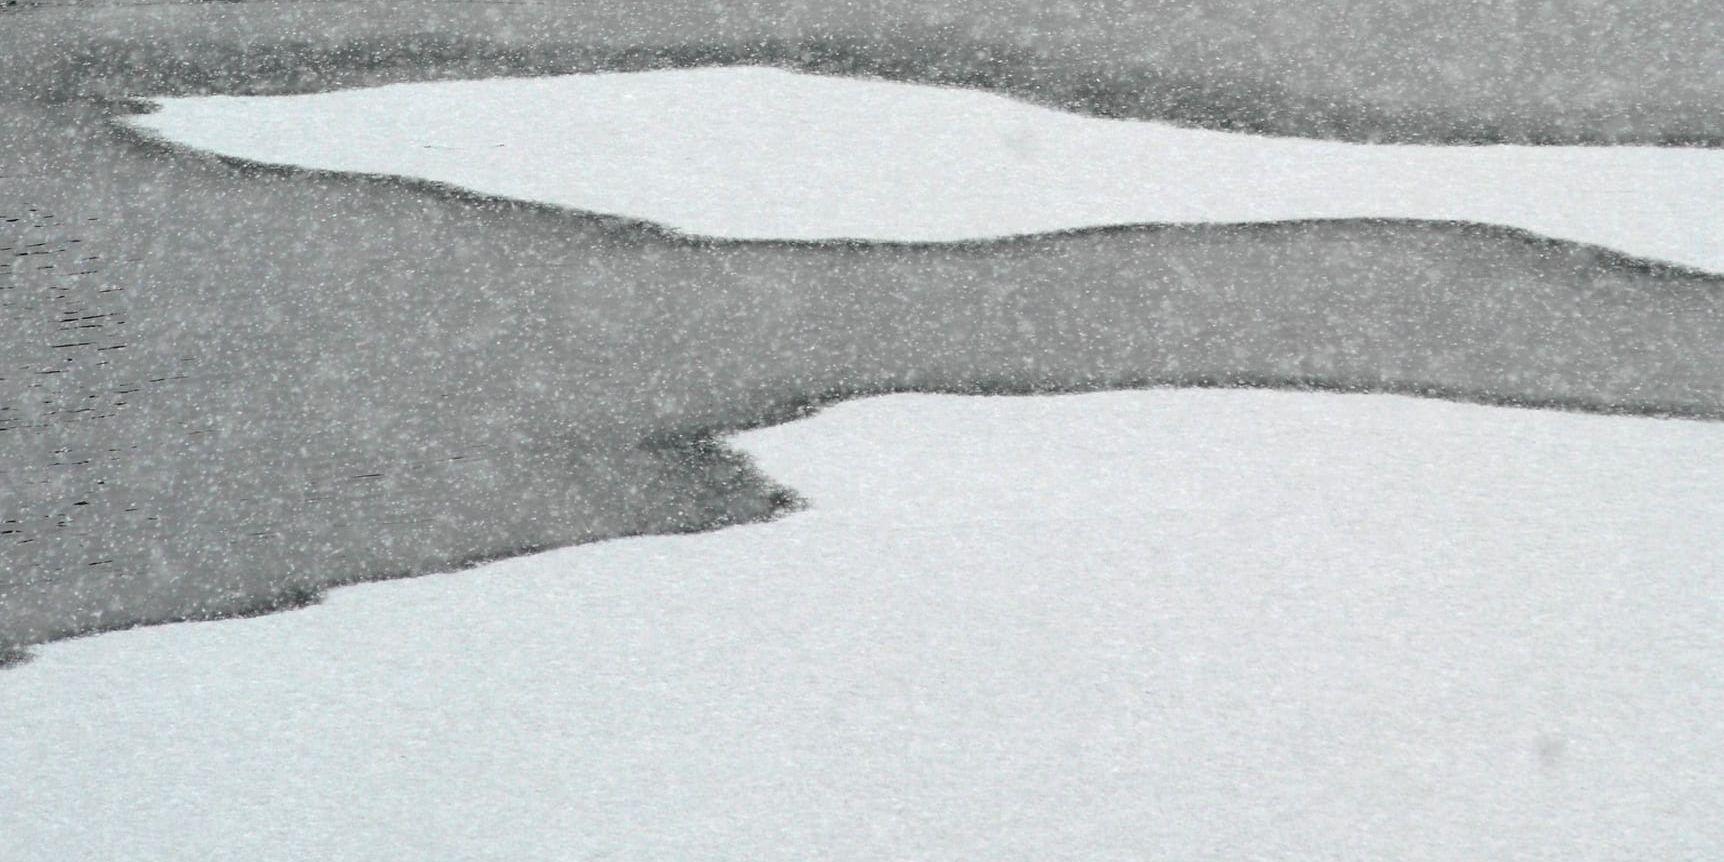 Sveaskog kräver pengar av biltestföretag som kör på två av deras vattenområden på vintrarna. Arkivbild.